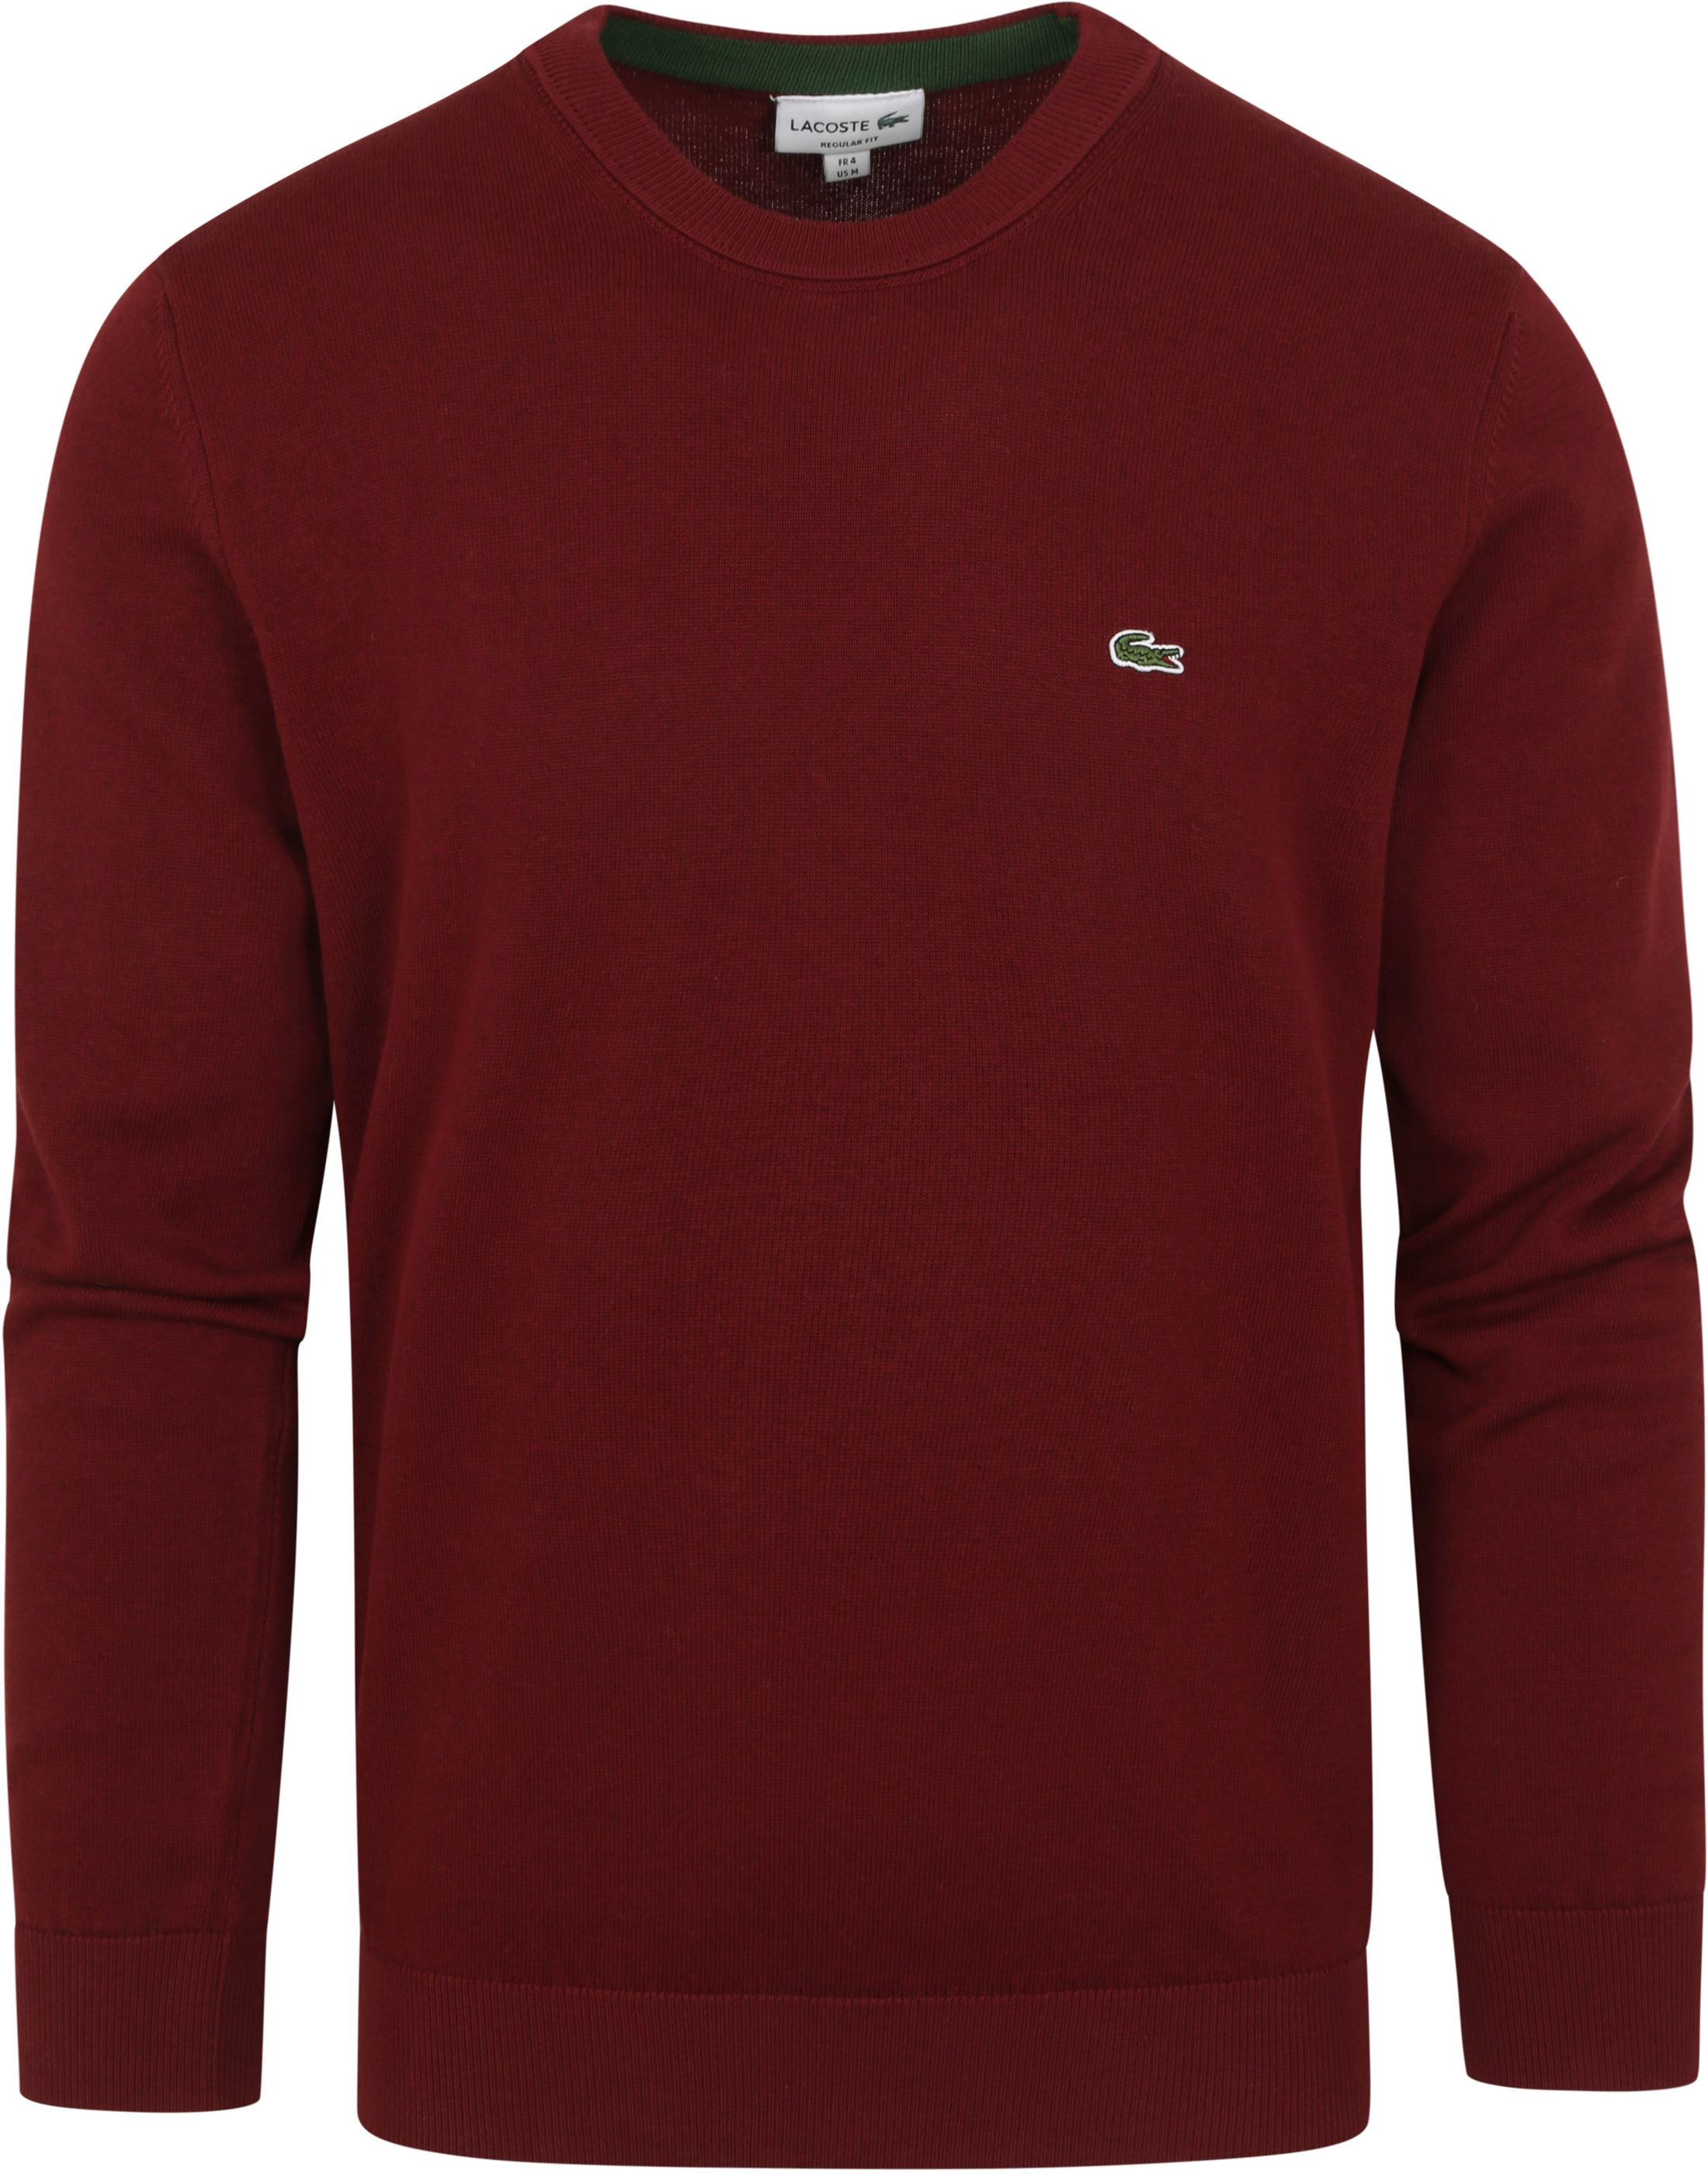 Lacoste Sweater O-hals Bordeaux Burgundy size L